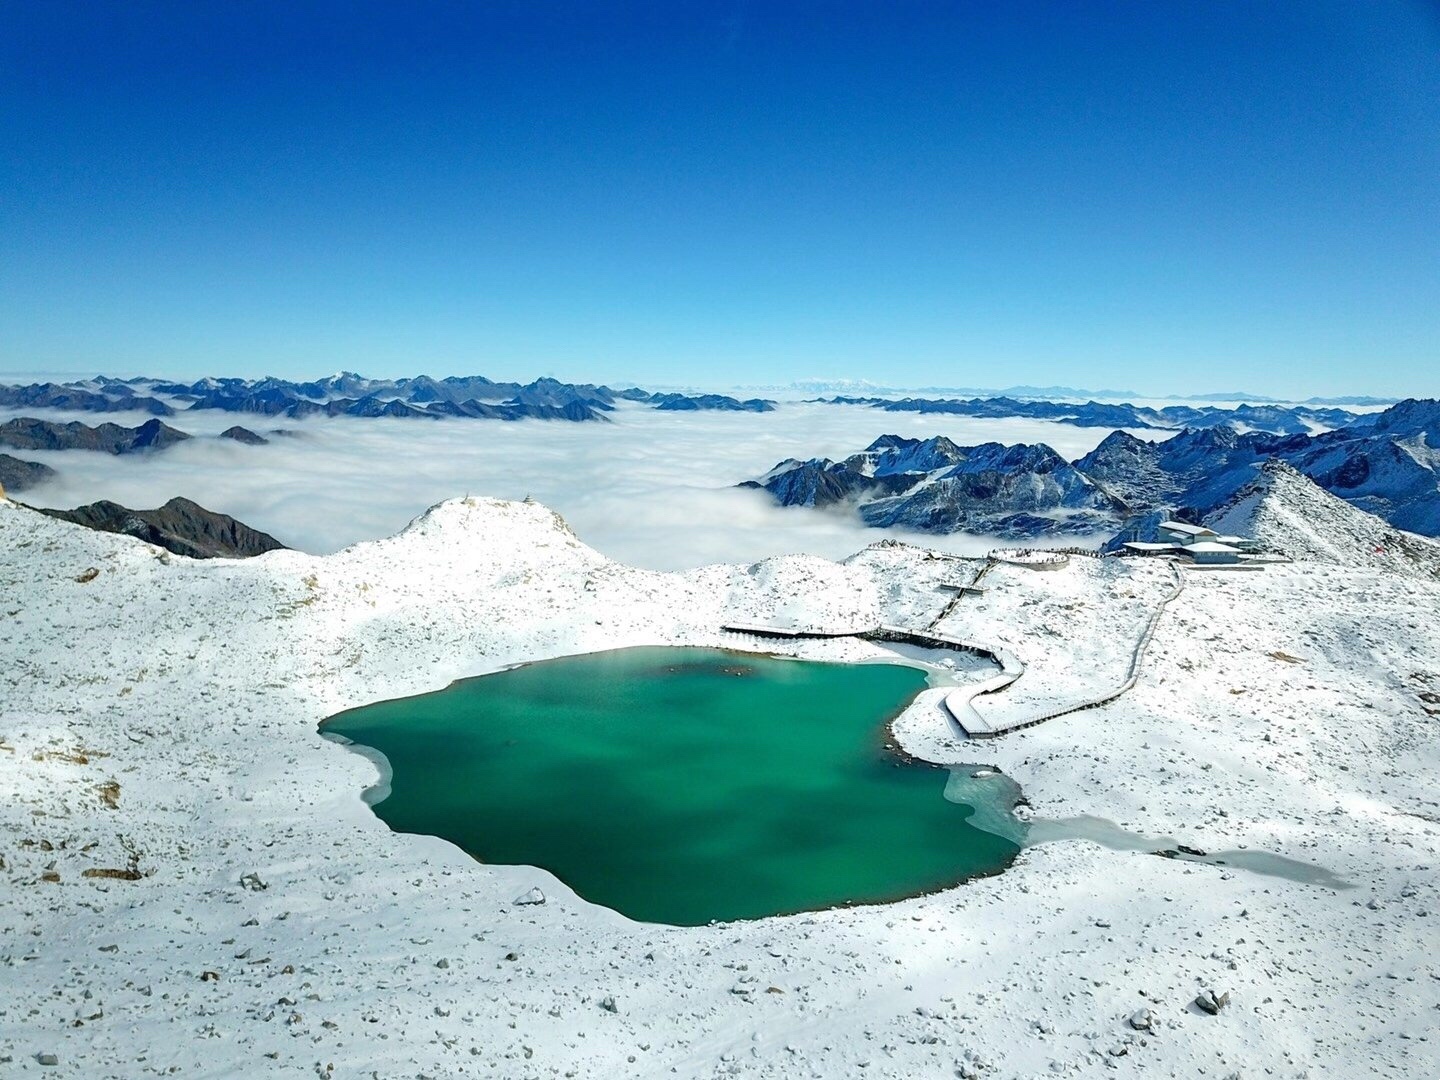 达古冰川-它有中国彩色冰川—冰雪天堂、摄影天堂等称号